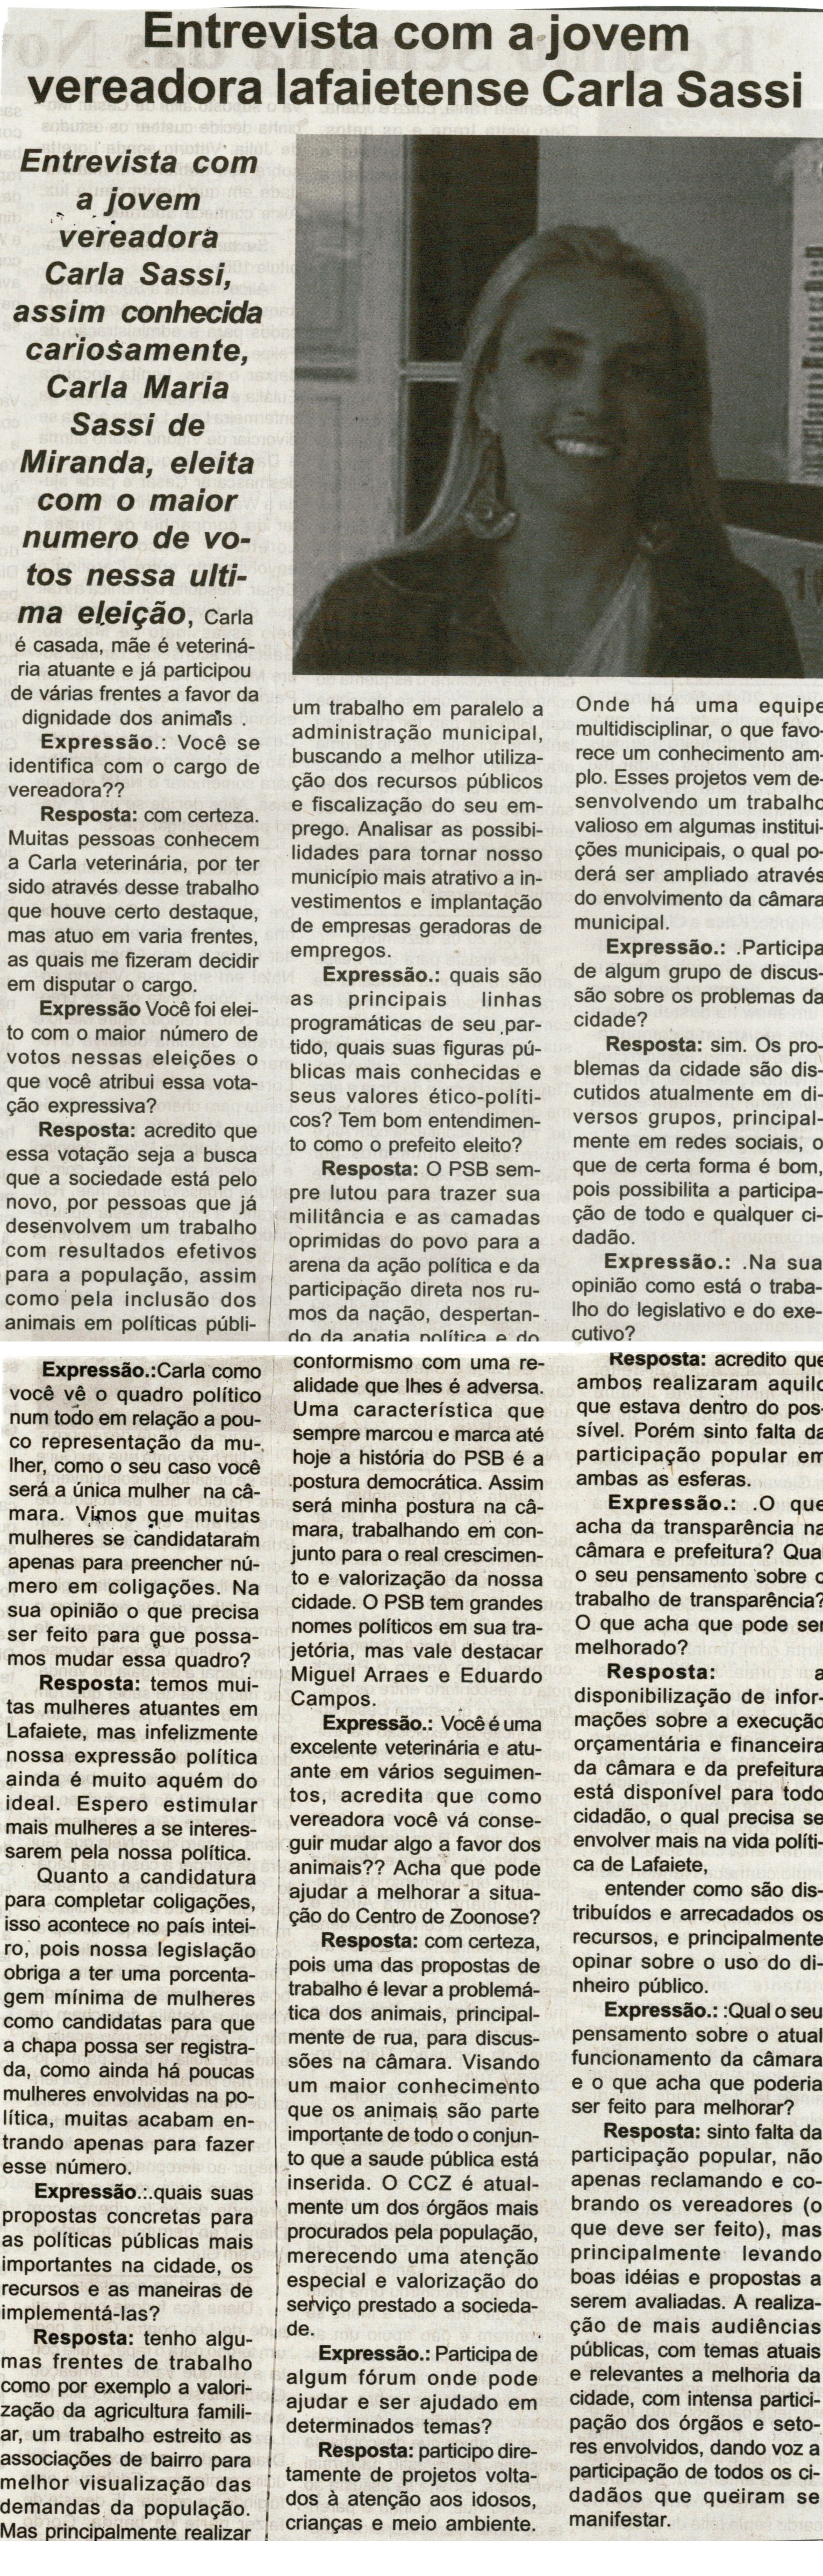  Entrevista com a  jovem vereadora lafaietense Carla Sassi. Jornal Expressão Regional, Conselheiro lafaiete, 17 a 23 dez. 2016, 456 X ed., p. 5